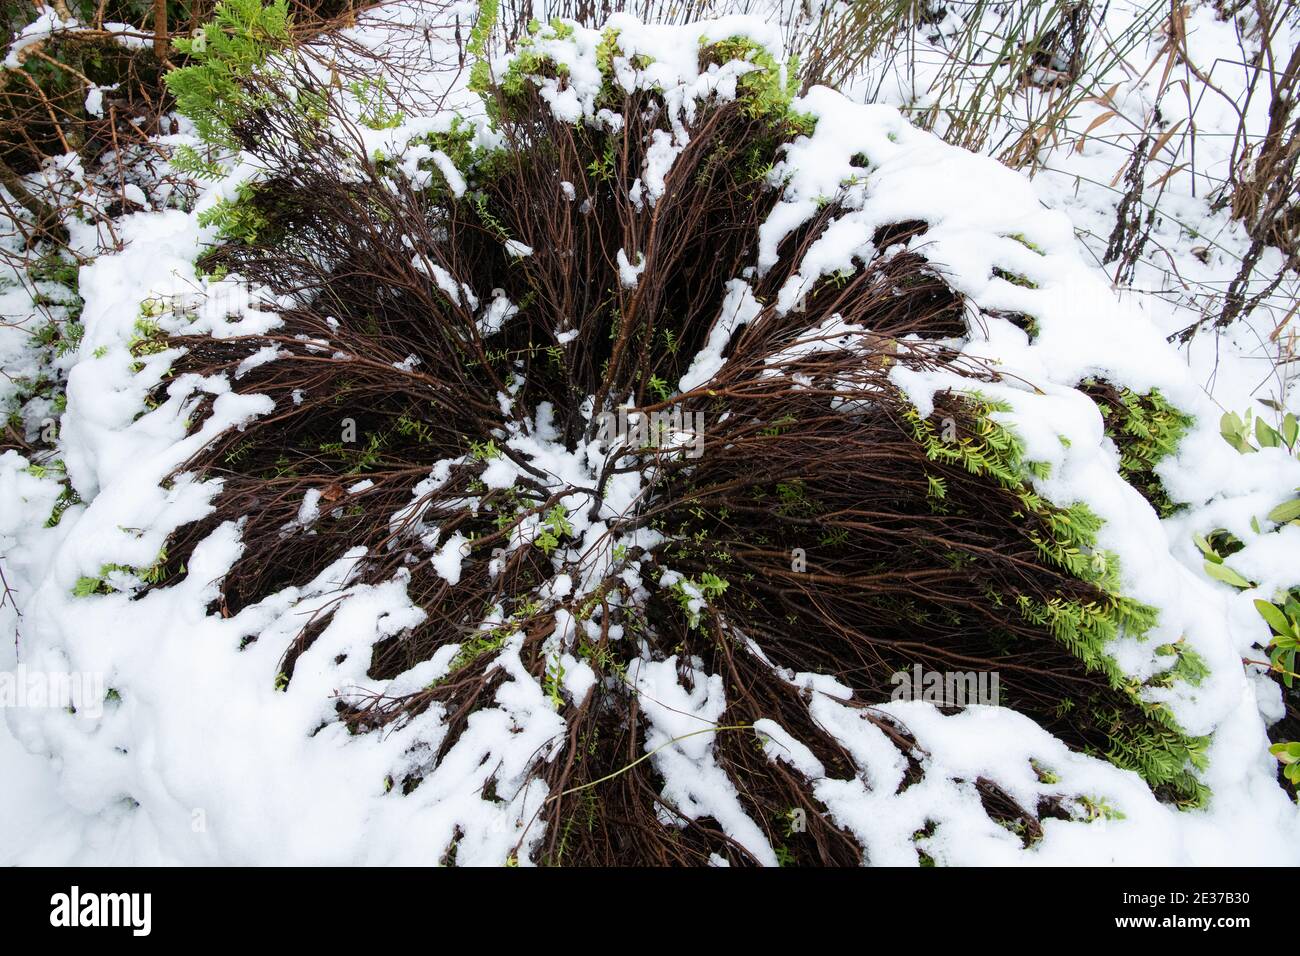 der hebe-Strauch ist nach dem Gewicht des Schnees abgeplattet und aufgeschraubt - Schottland, Großbritannien - siehe Bild 2E37B30 zur Entfernung des Schnees Stockfoto